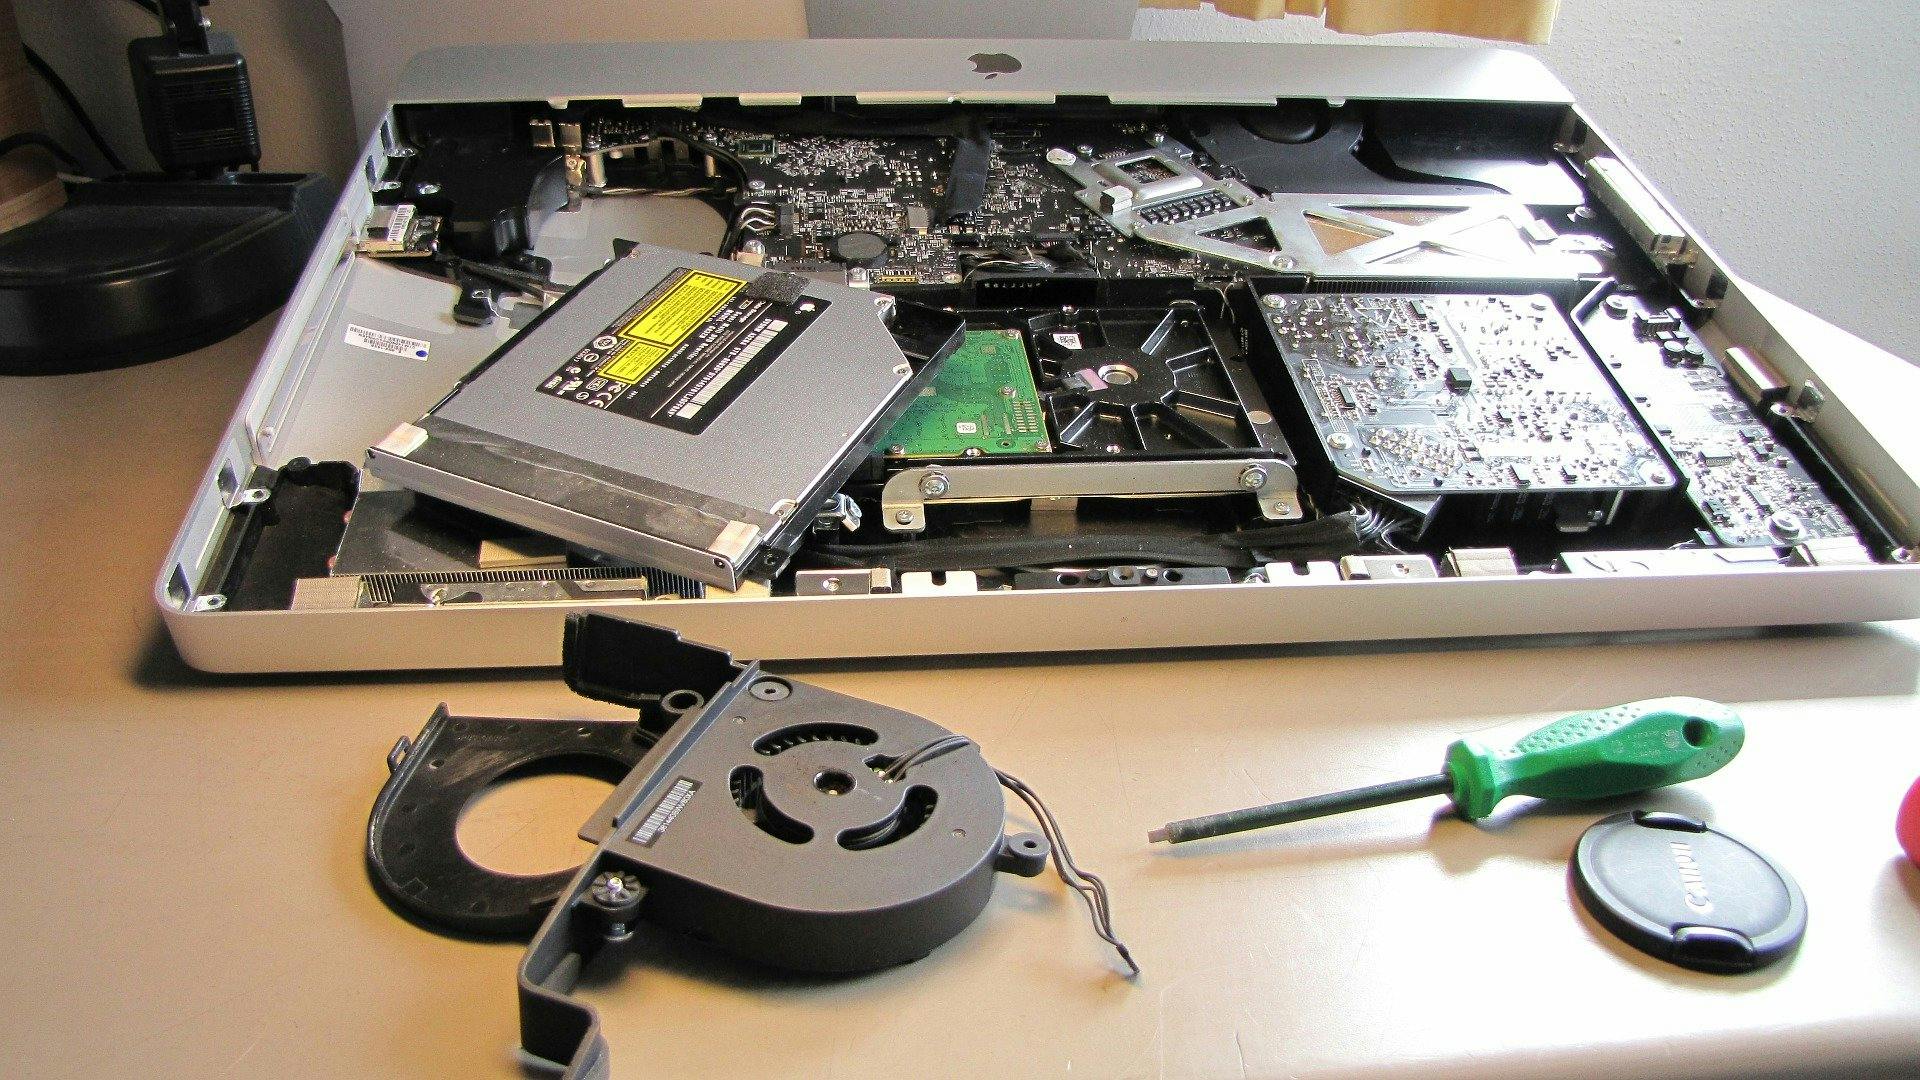 Laptop reparatie